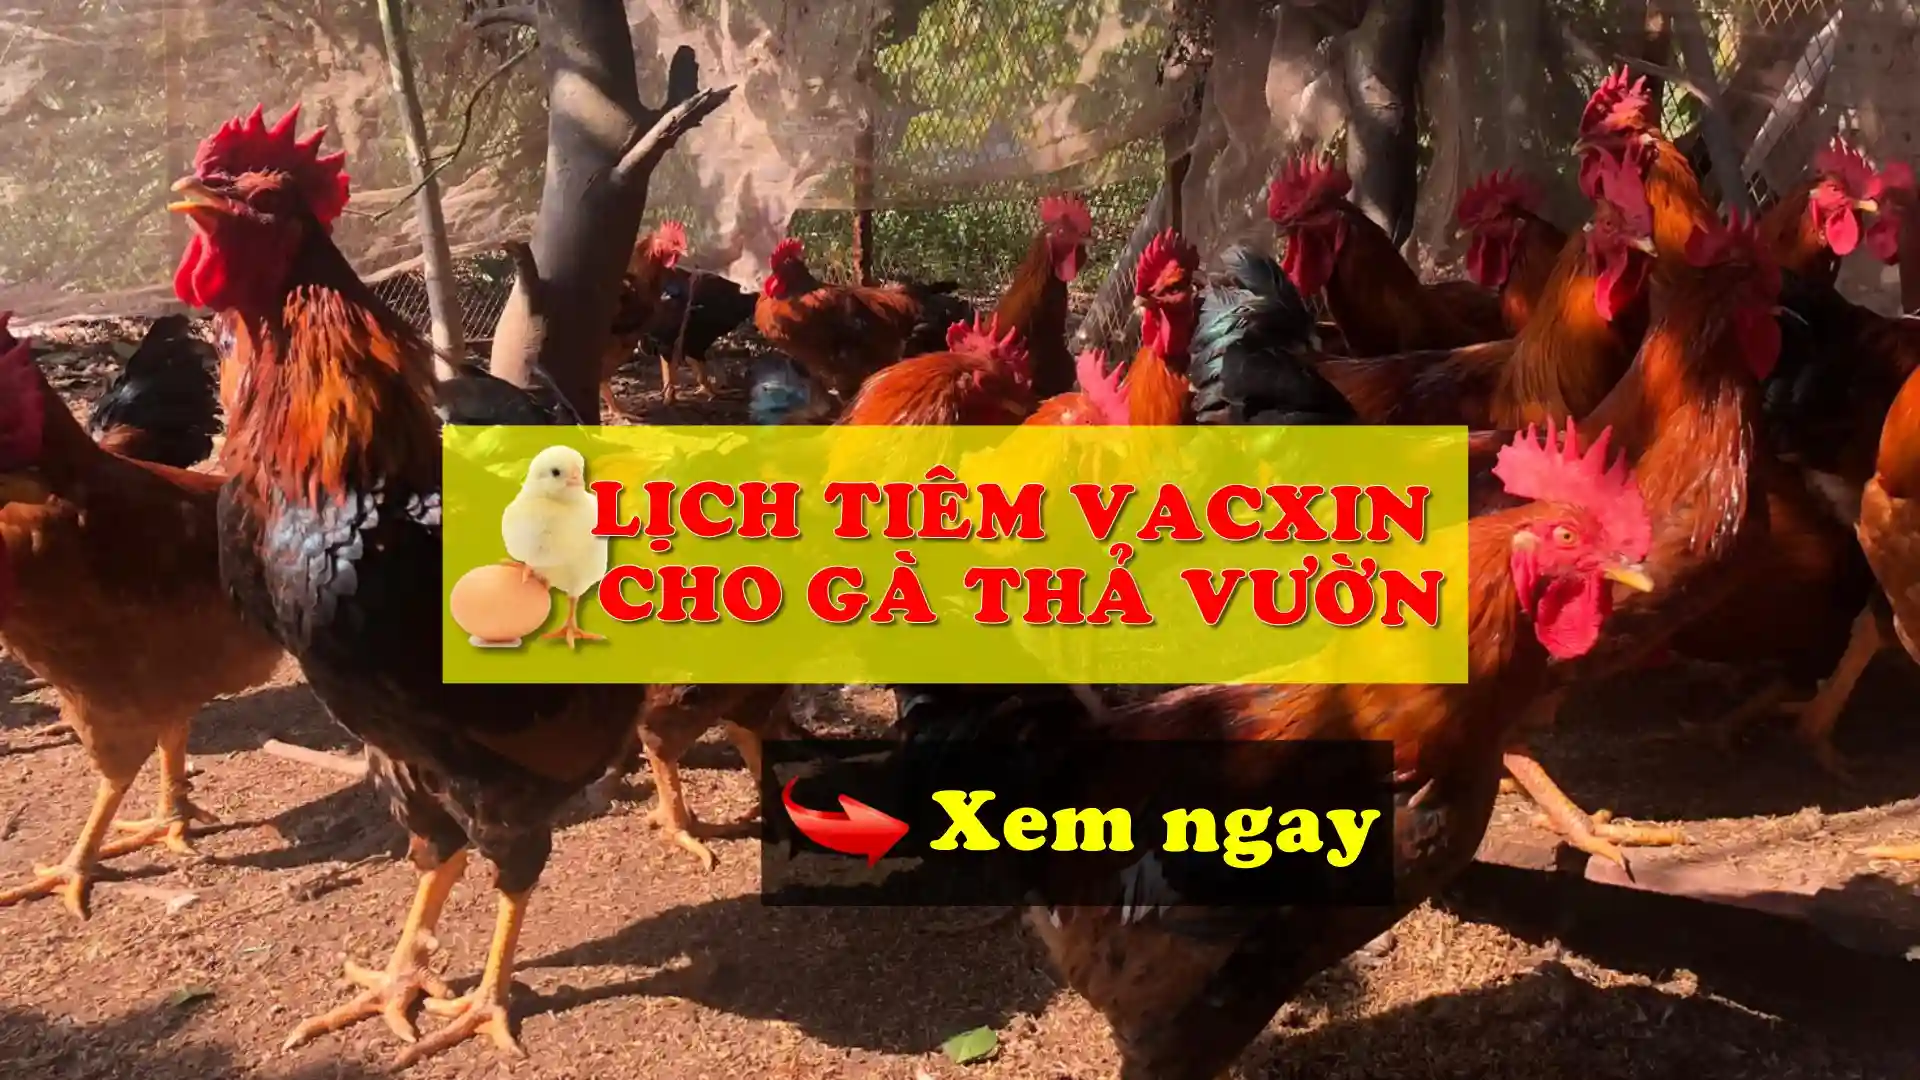 Lịch tiêm vacxin cho gà thả vườn